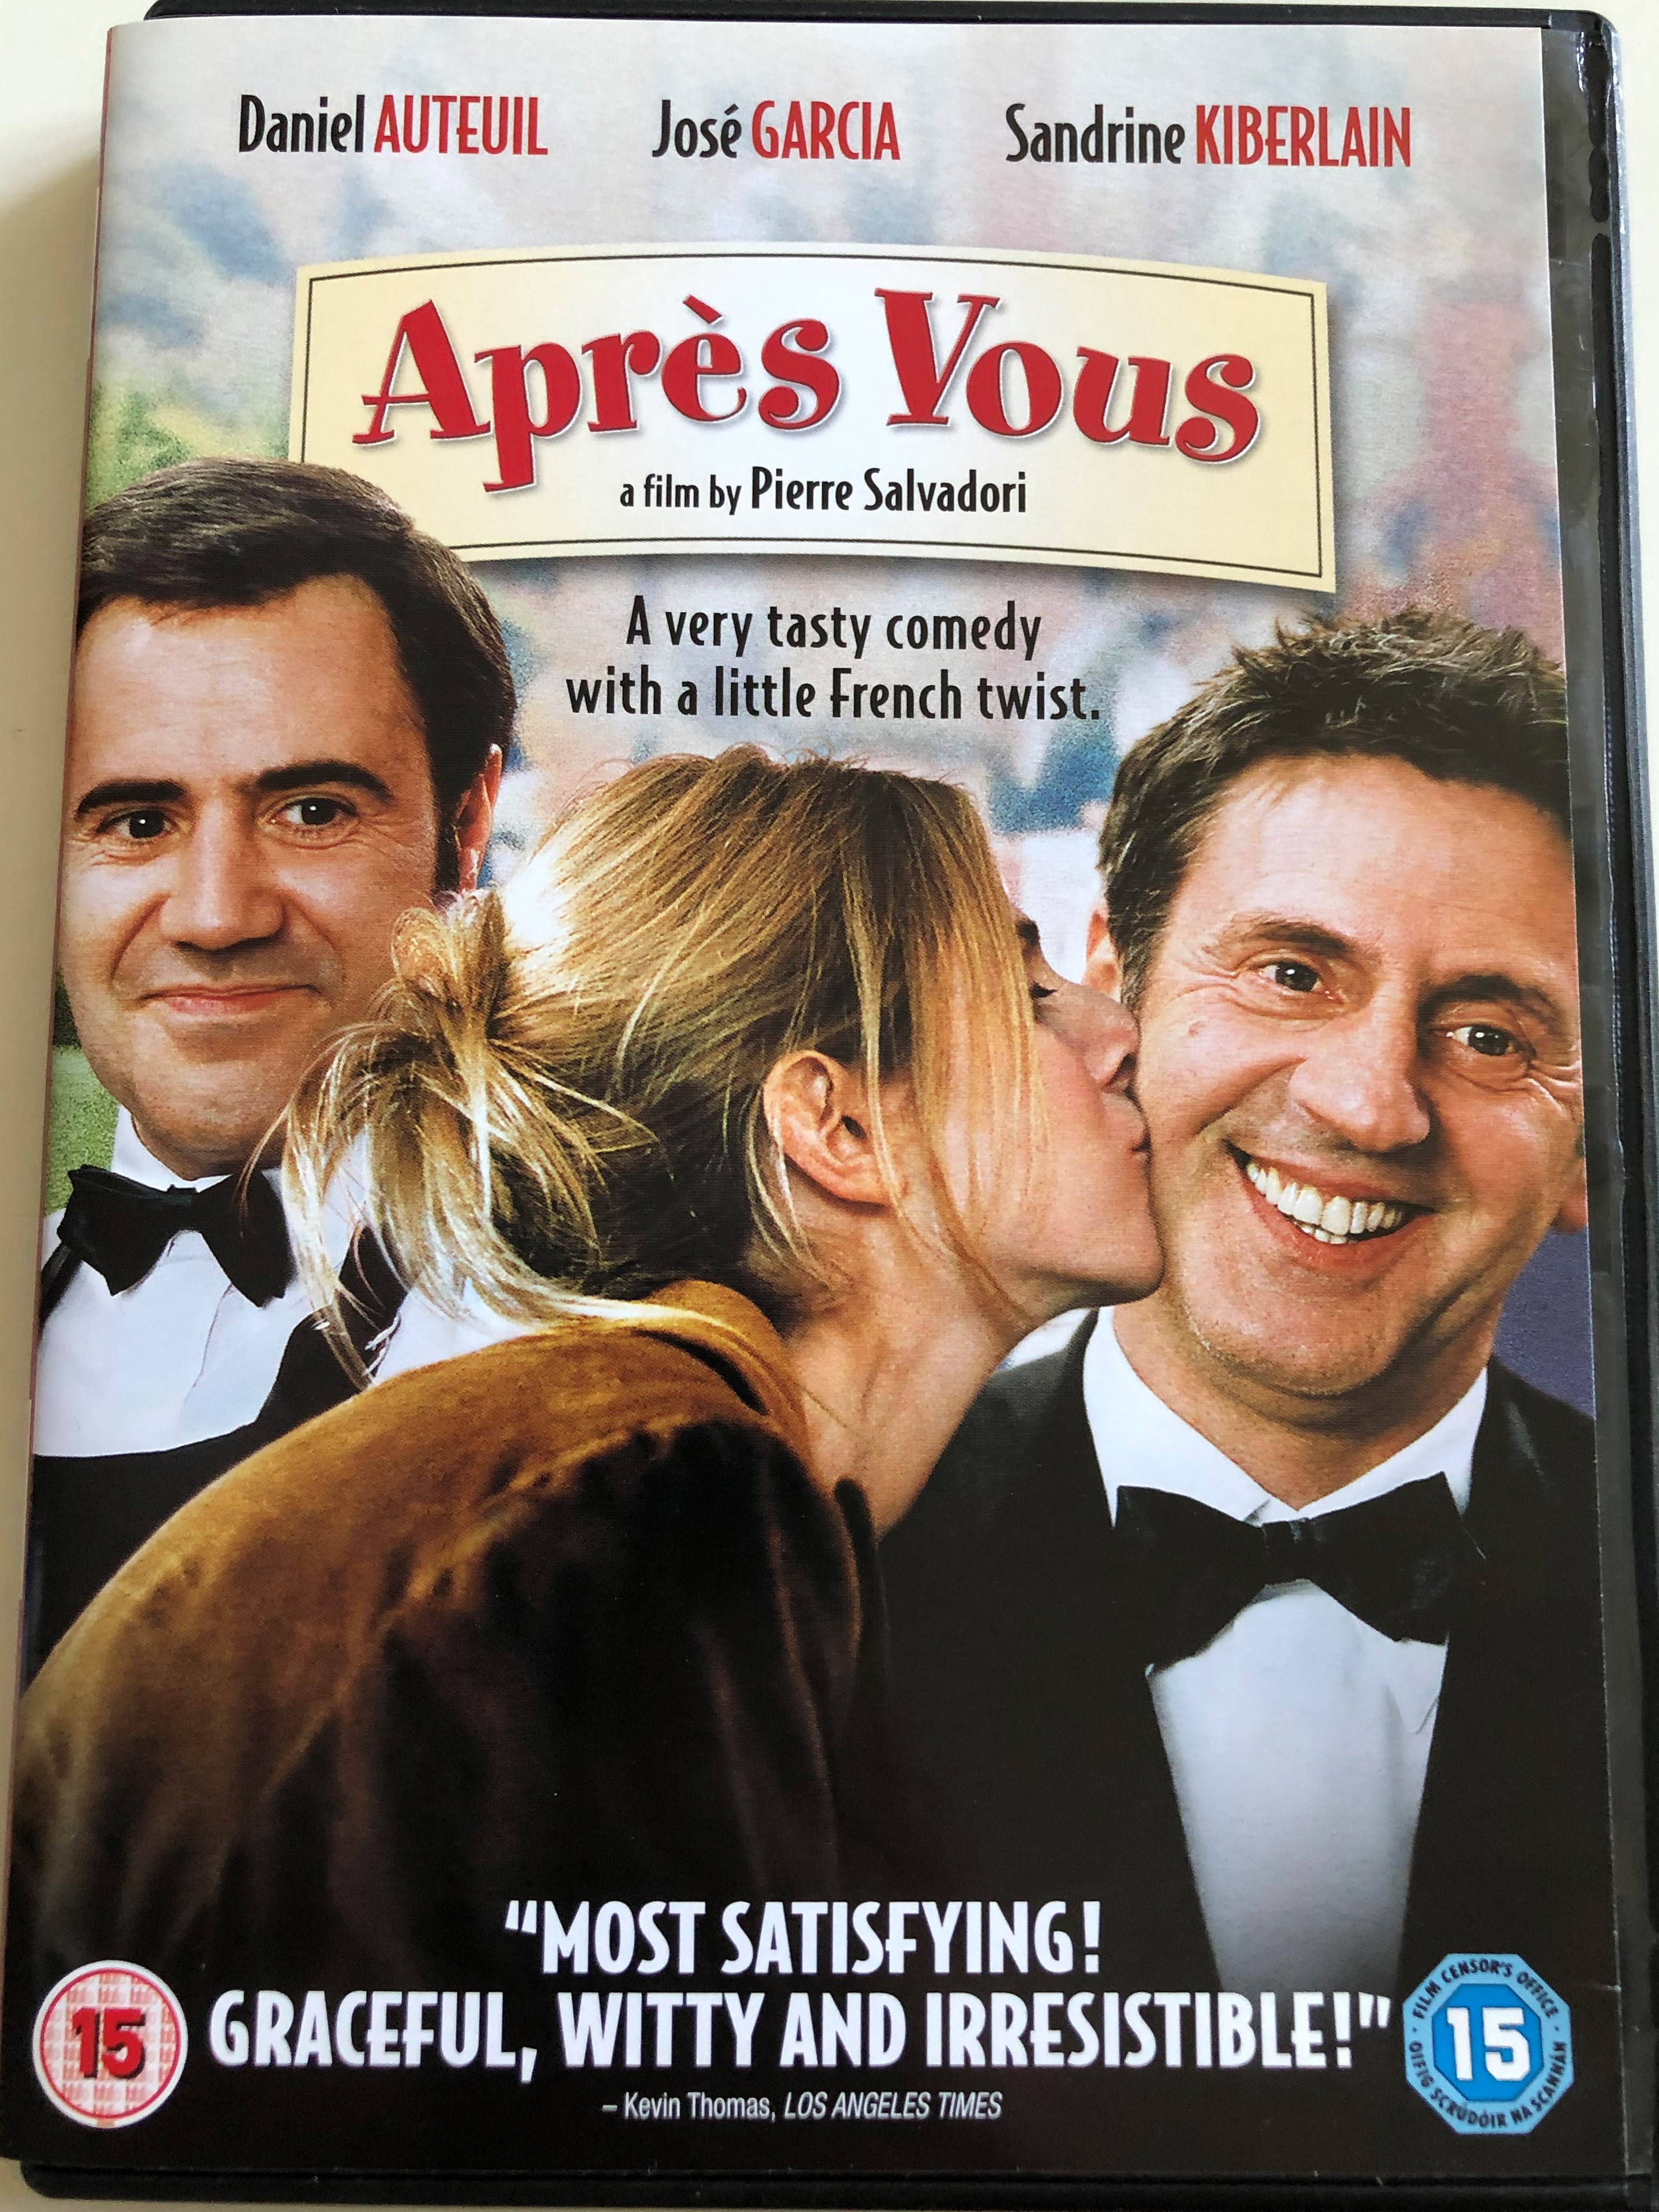 Aprés Vous DVD 2003 After you... / Directed by Pierre Salvadori / Starring:  Daniel Auteuil, José Garcia, Sandrine Kiberlain - bibleinmylanguage